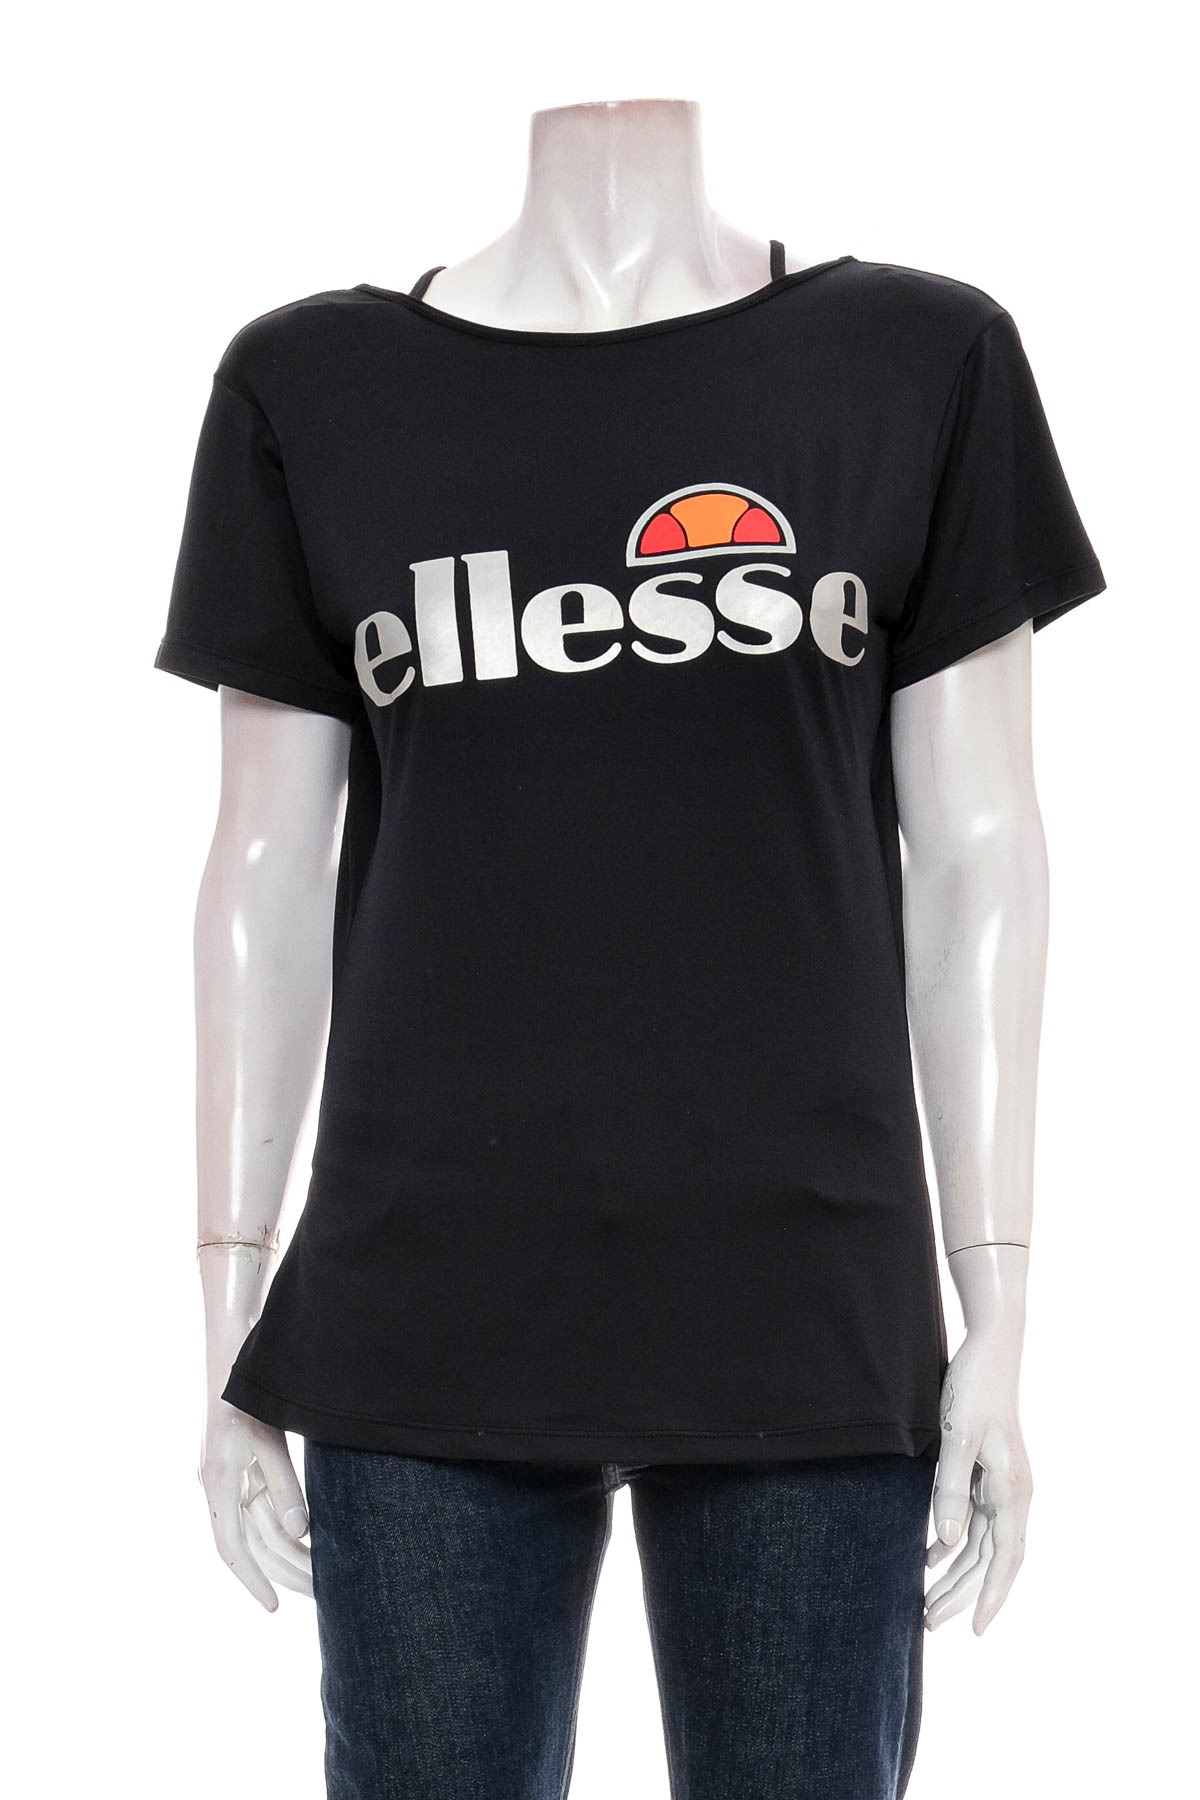 Дамска тениска - Ellesse - 0